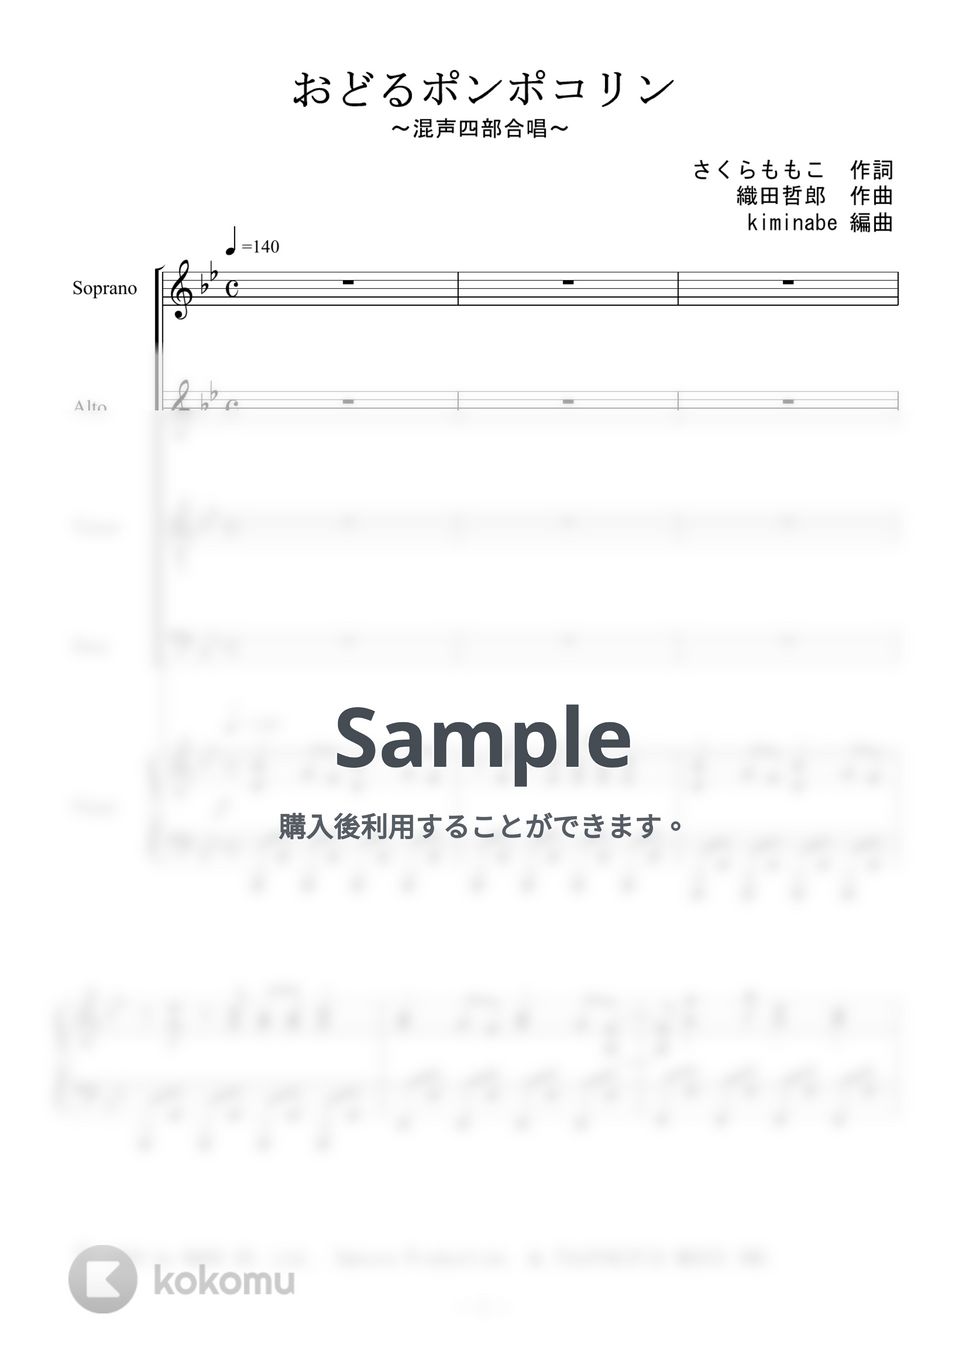 ちびまる子ちゃん主題歌 - おどるポンポコリン (混声四部合唱) by kiminabe